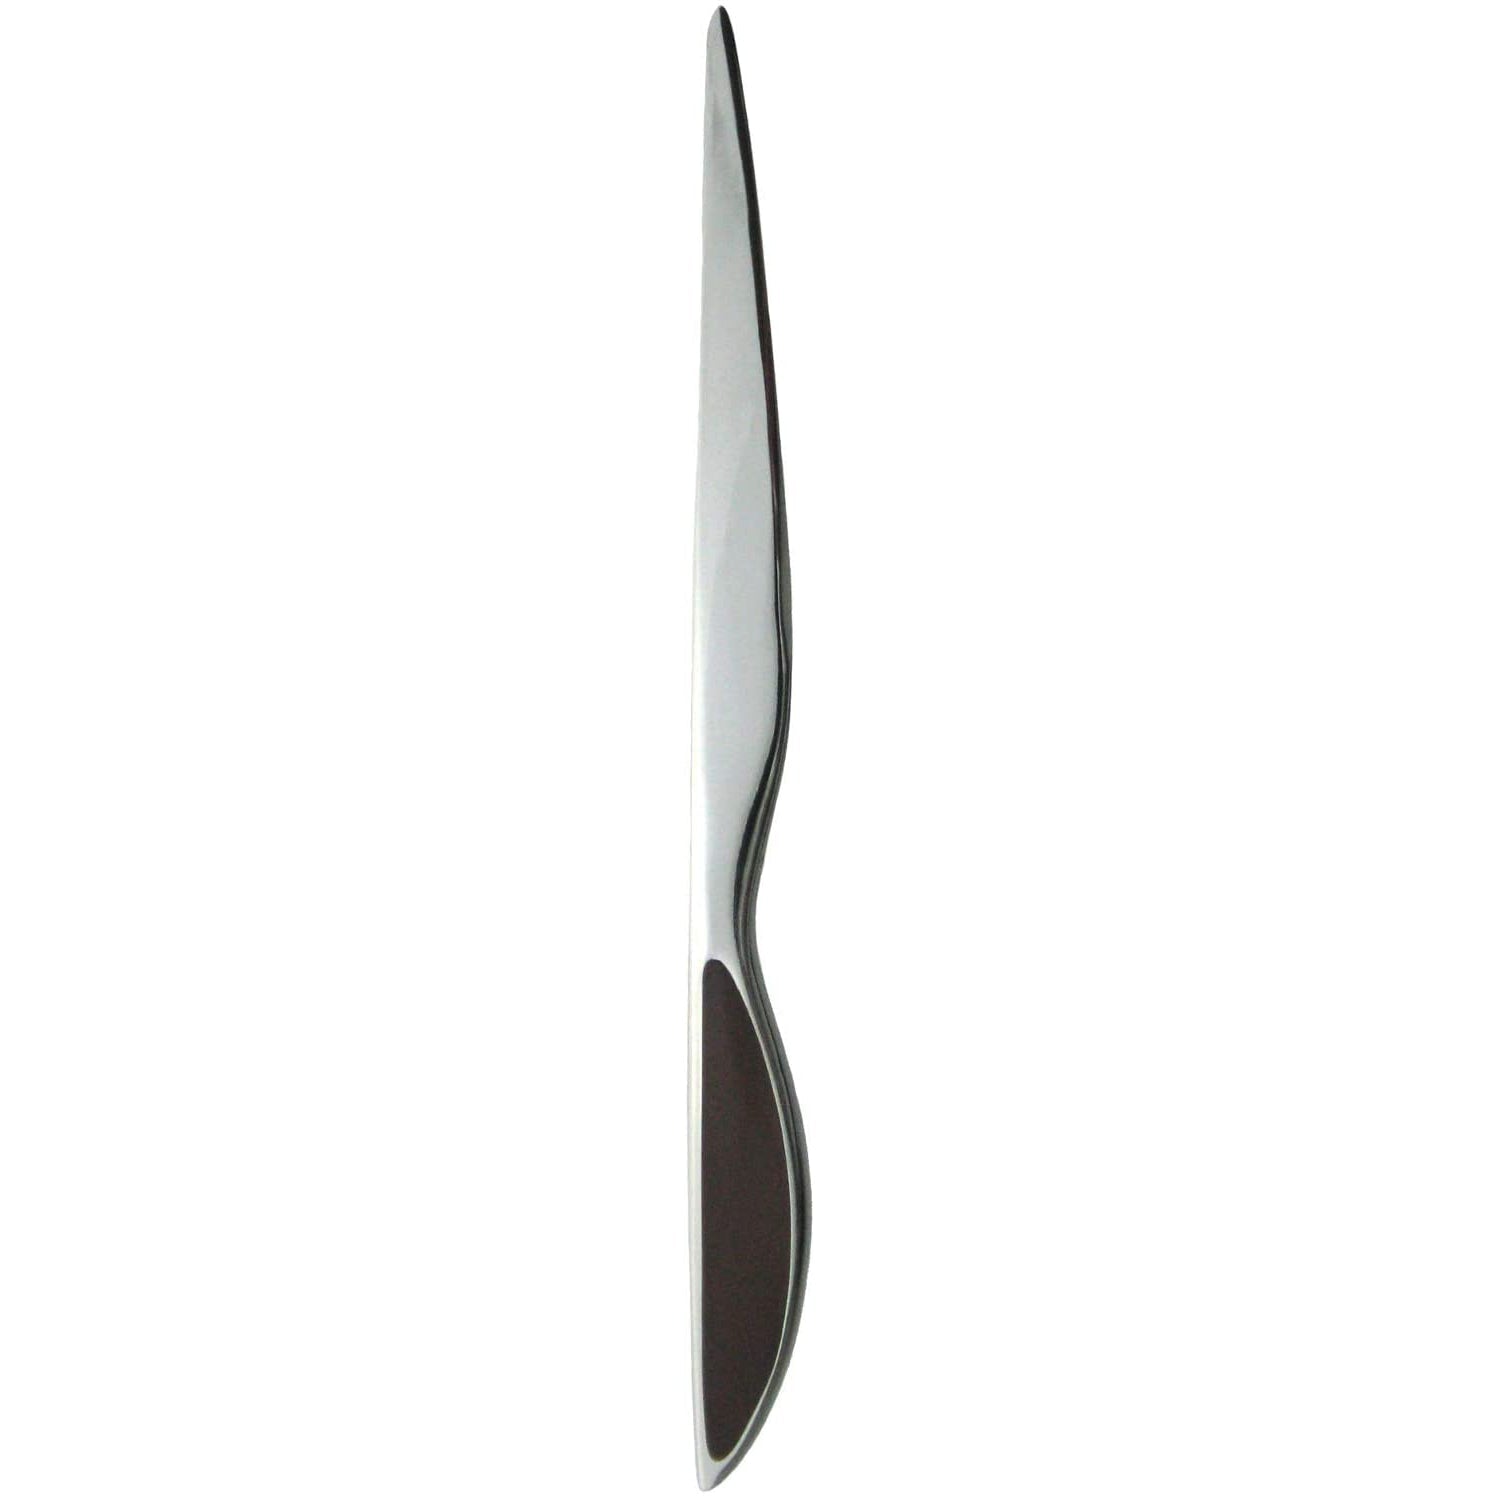 Japanese Paper knife Scissors Set Silky Lengte:180mm Letter opener Desk Set